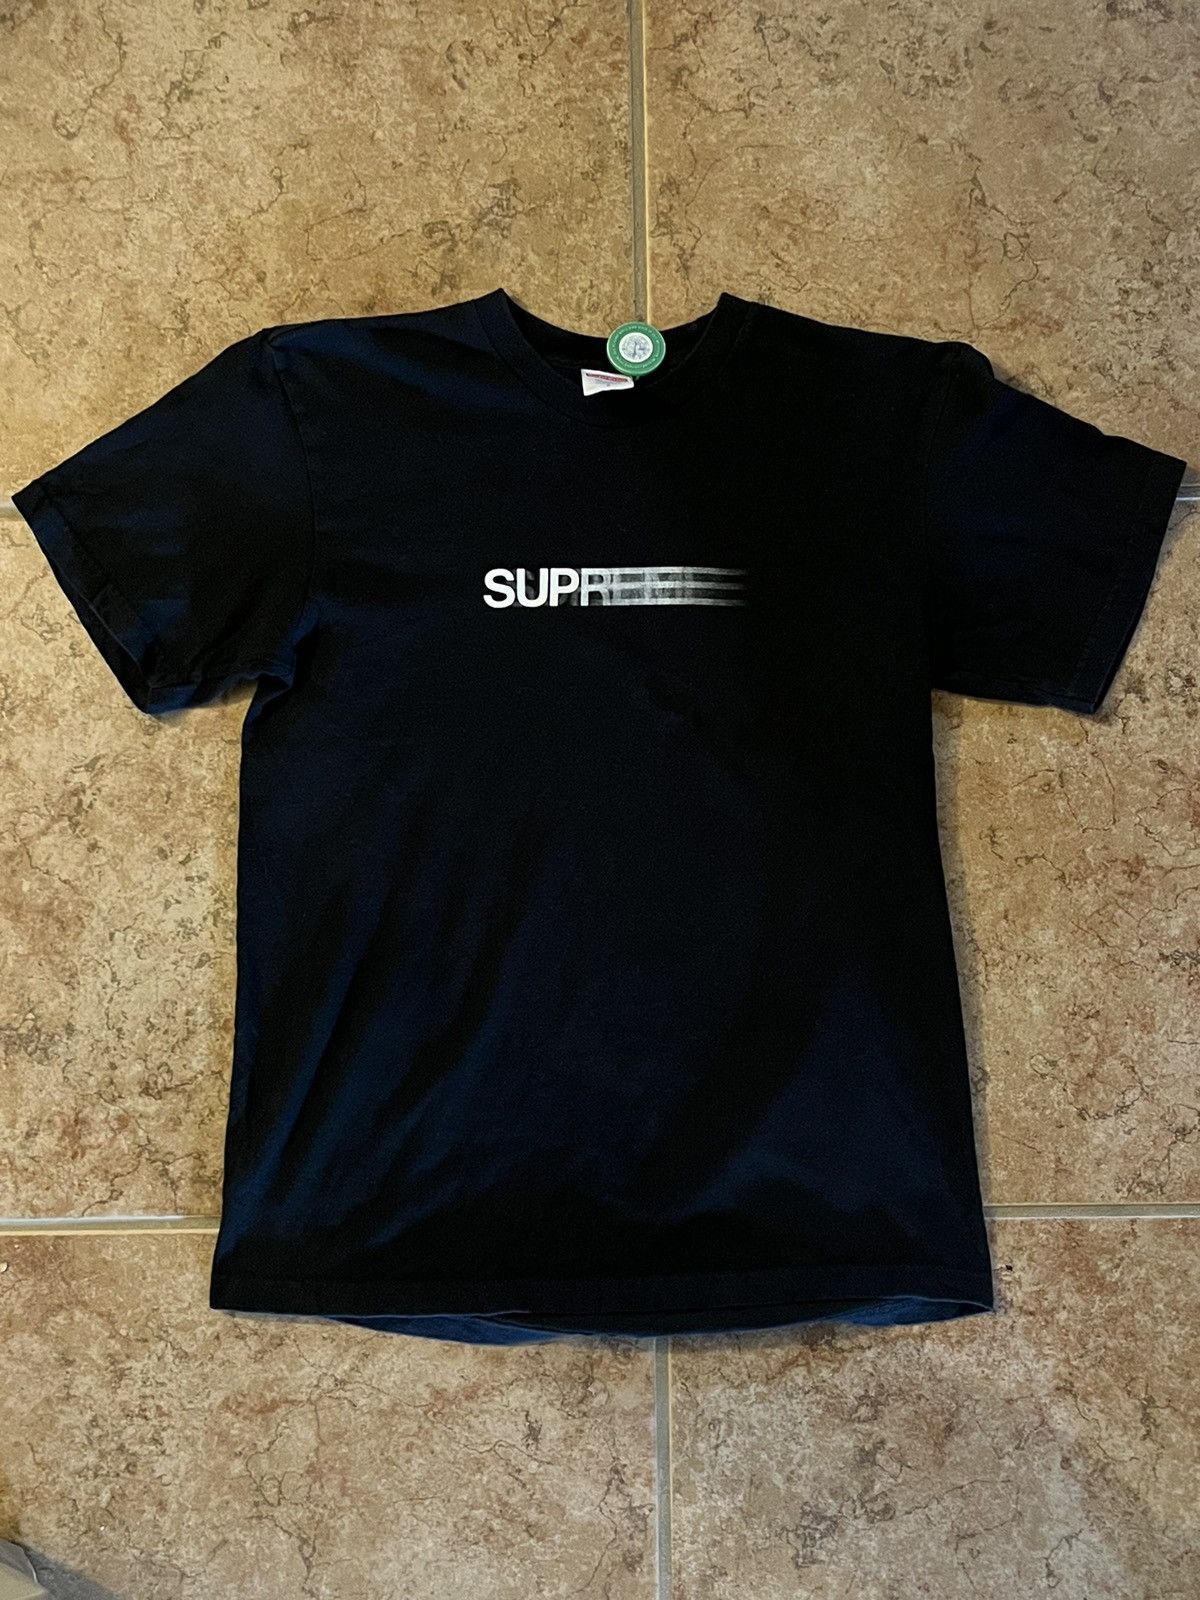 Supreme SS16 Supreme motion logo tee | Grailed